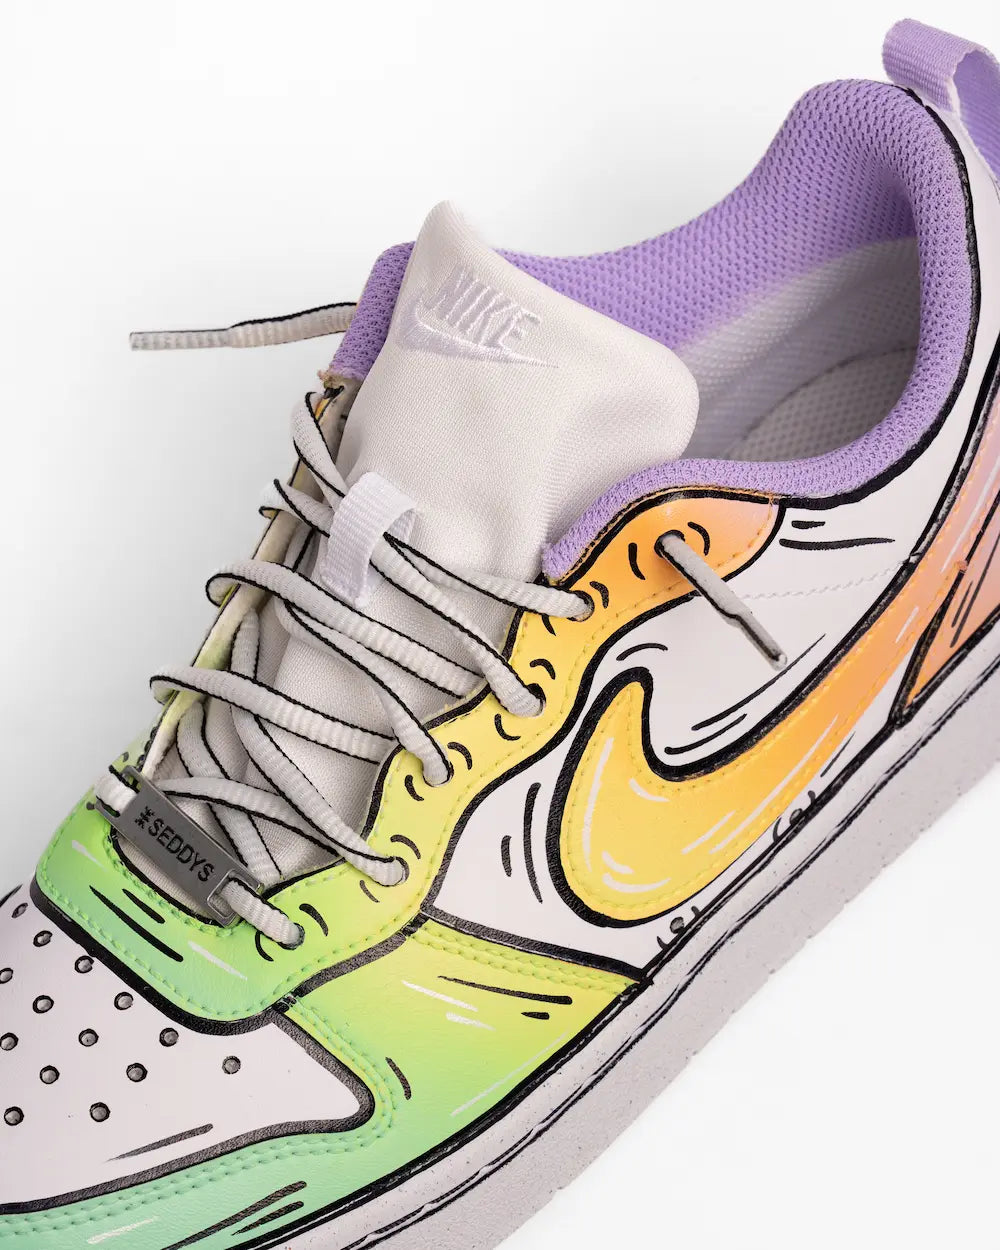 Sneakers Nike personalizzate con sfumatura pastello lilla-giallo-verde